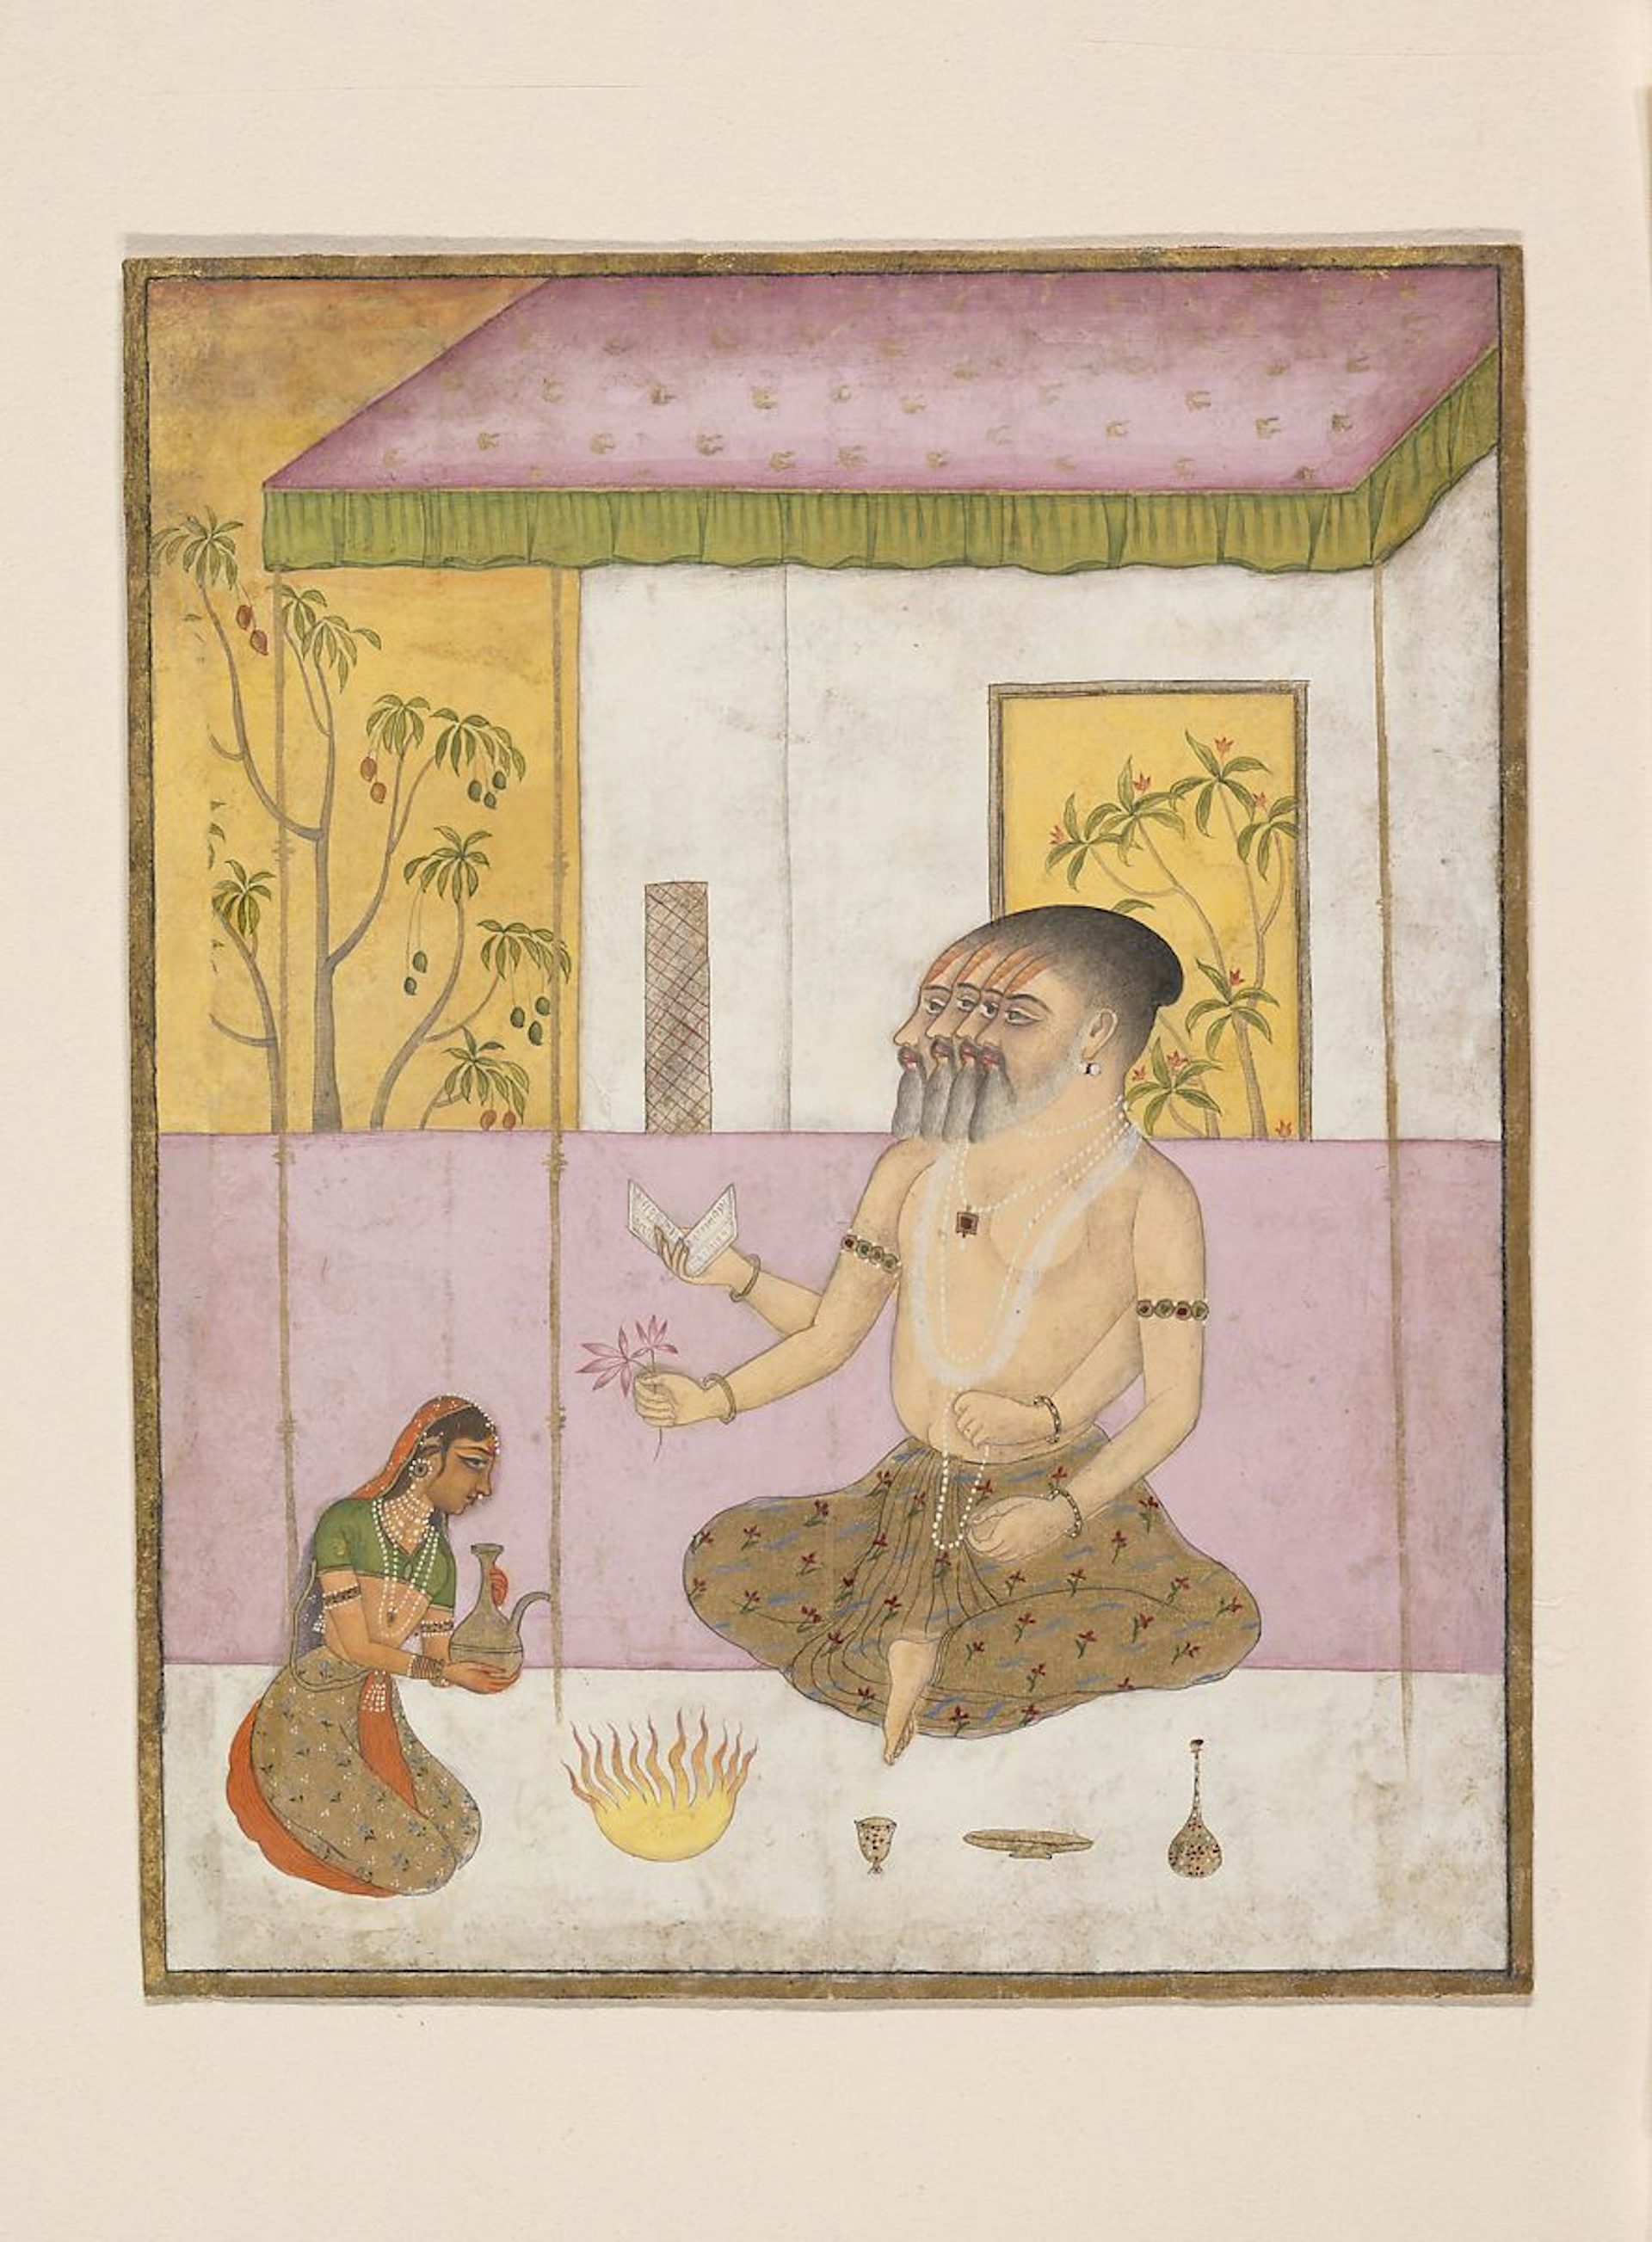 Brahma'nın Rajasthani resmi, yaklaşık 1675